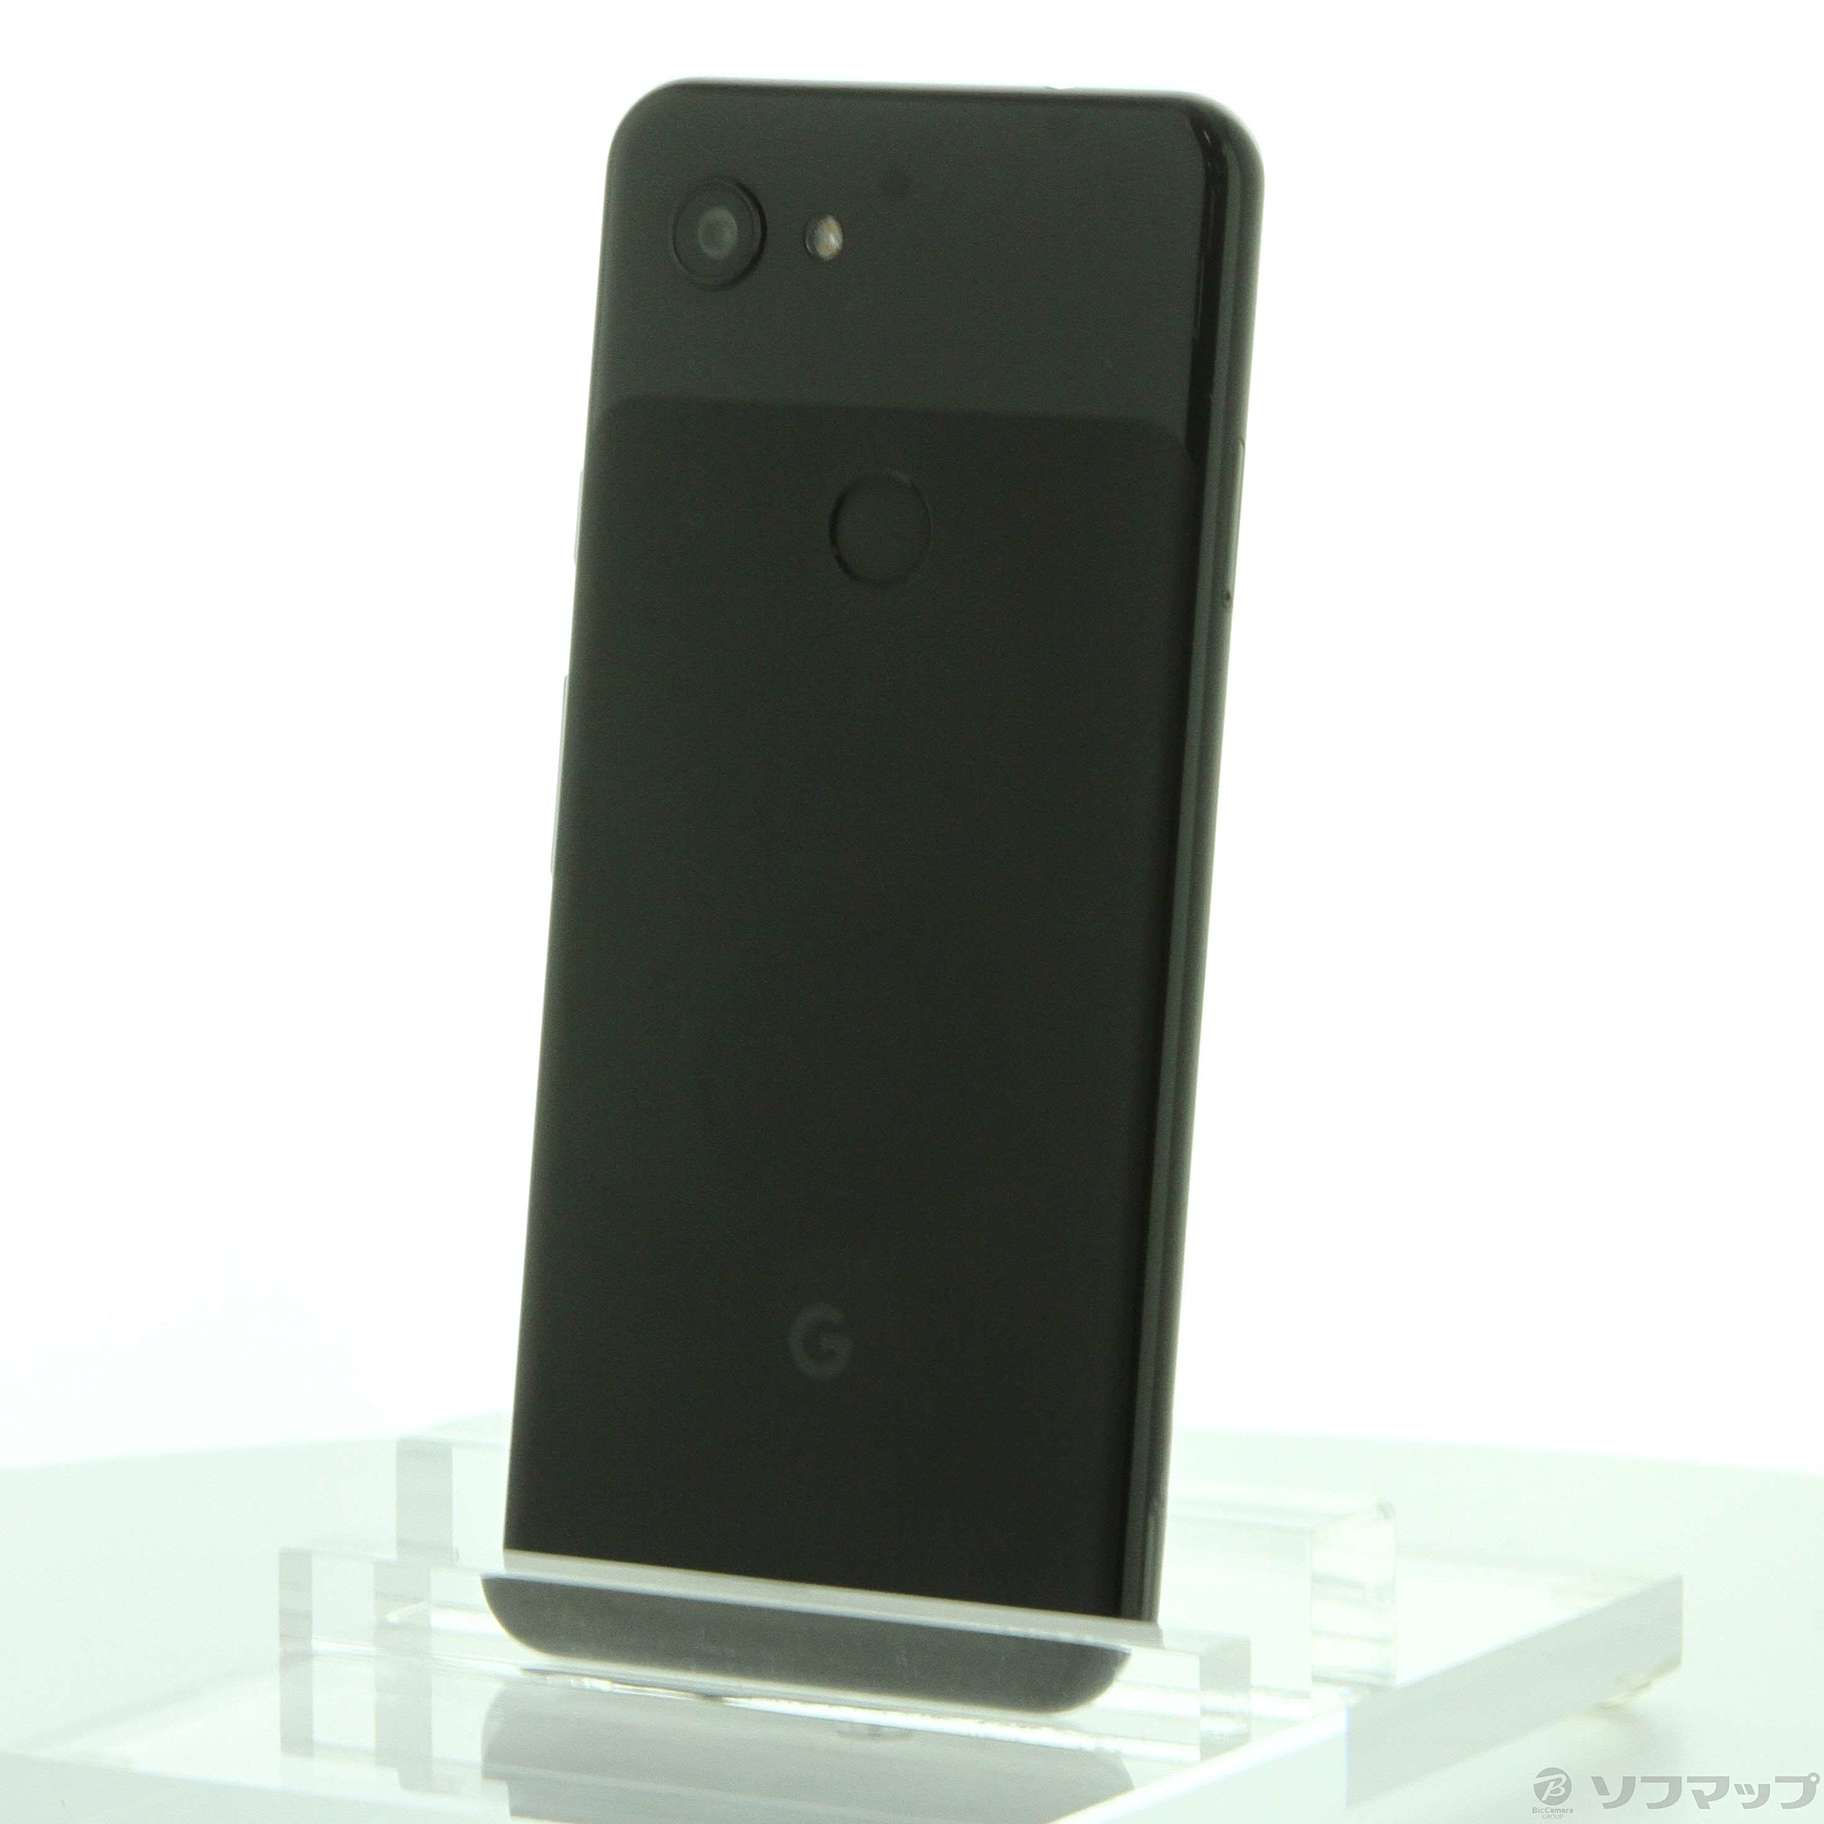 おむつSIMフリー Google Pixel 2 Just Black 黒 64GB G011A Android